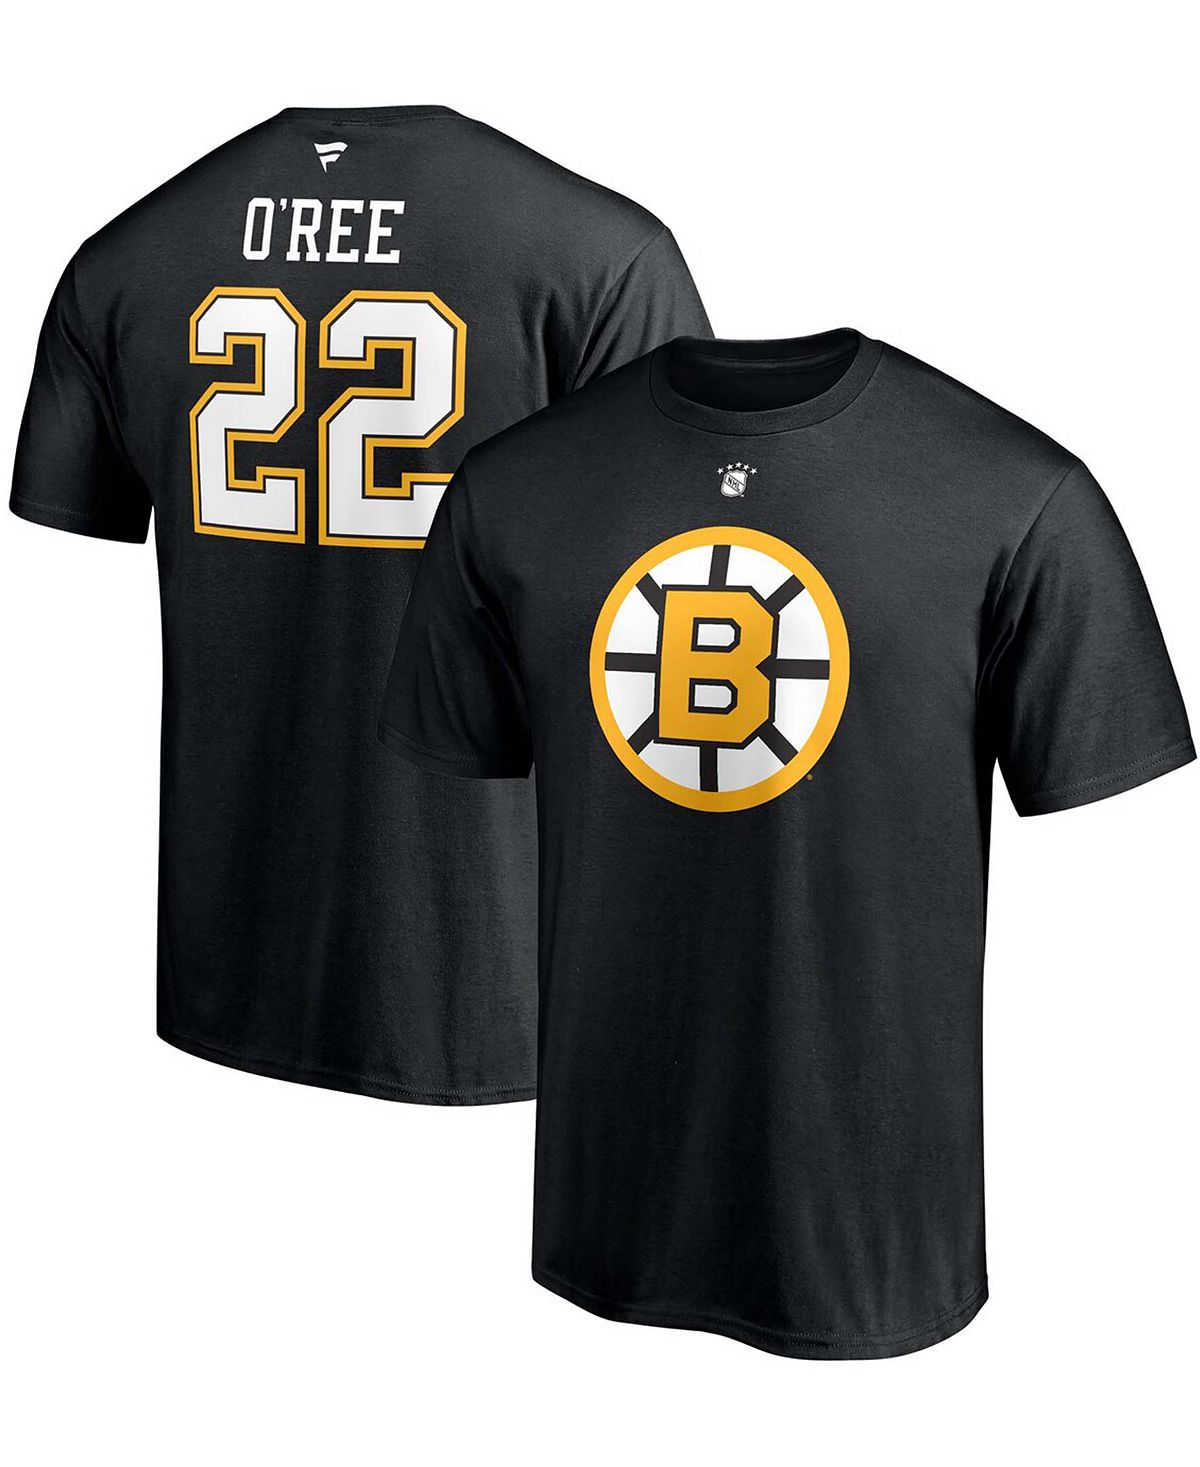 Мужская футболка willie o'ree black boston bruins authentic stack с именем и номером игрока на пенсии Fanatics, черный бейсболка boston bruins